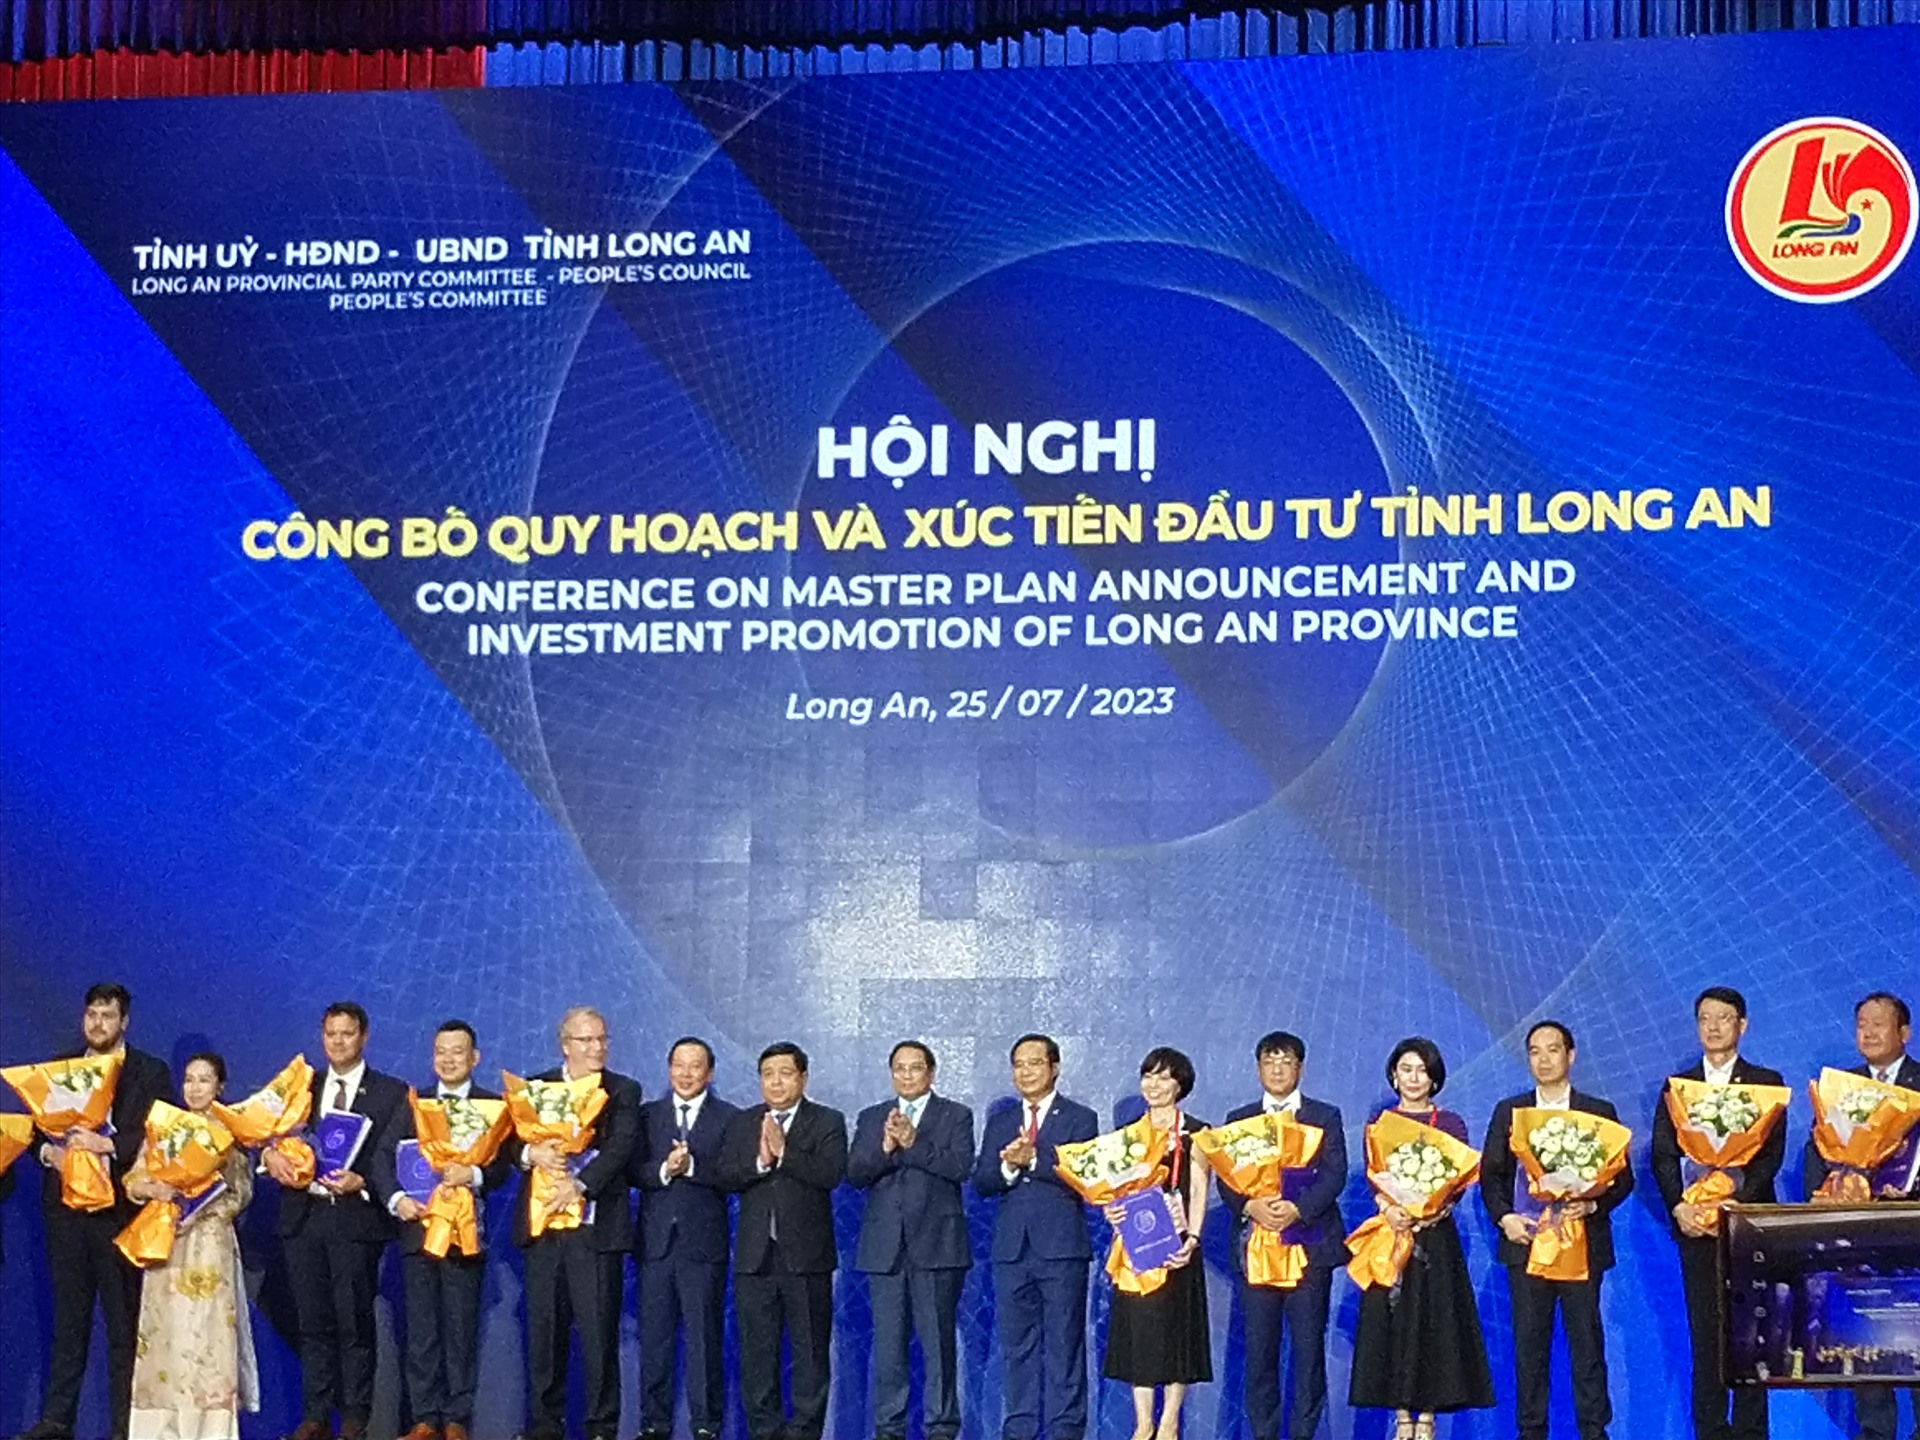 Thủ tướng Phạm Minh Chính cùng lãnh đạo tỉnh Long An trao Giấy chứng nhận đầu tư cho các nhà đầu tư. Ảnh: K.Q